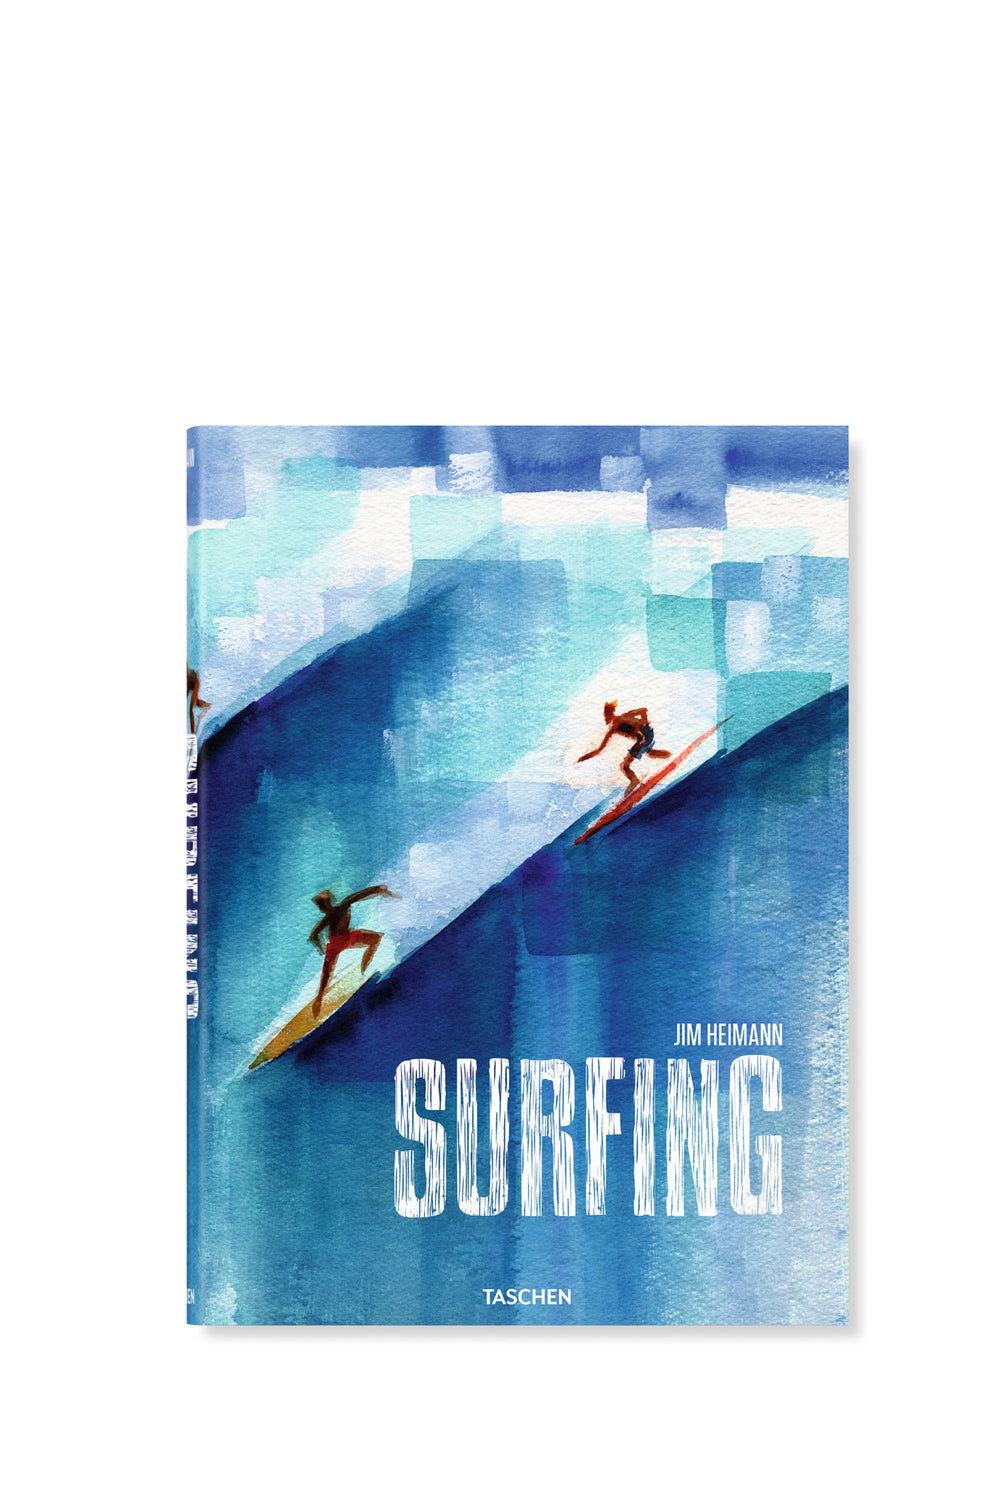 PUKAS-SURF-SHOP-BOOK-TASCHEN-SURFING-1778-TODAY